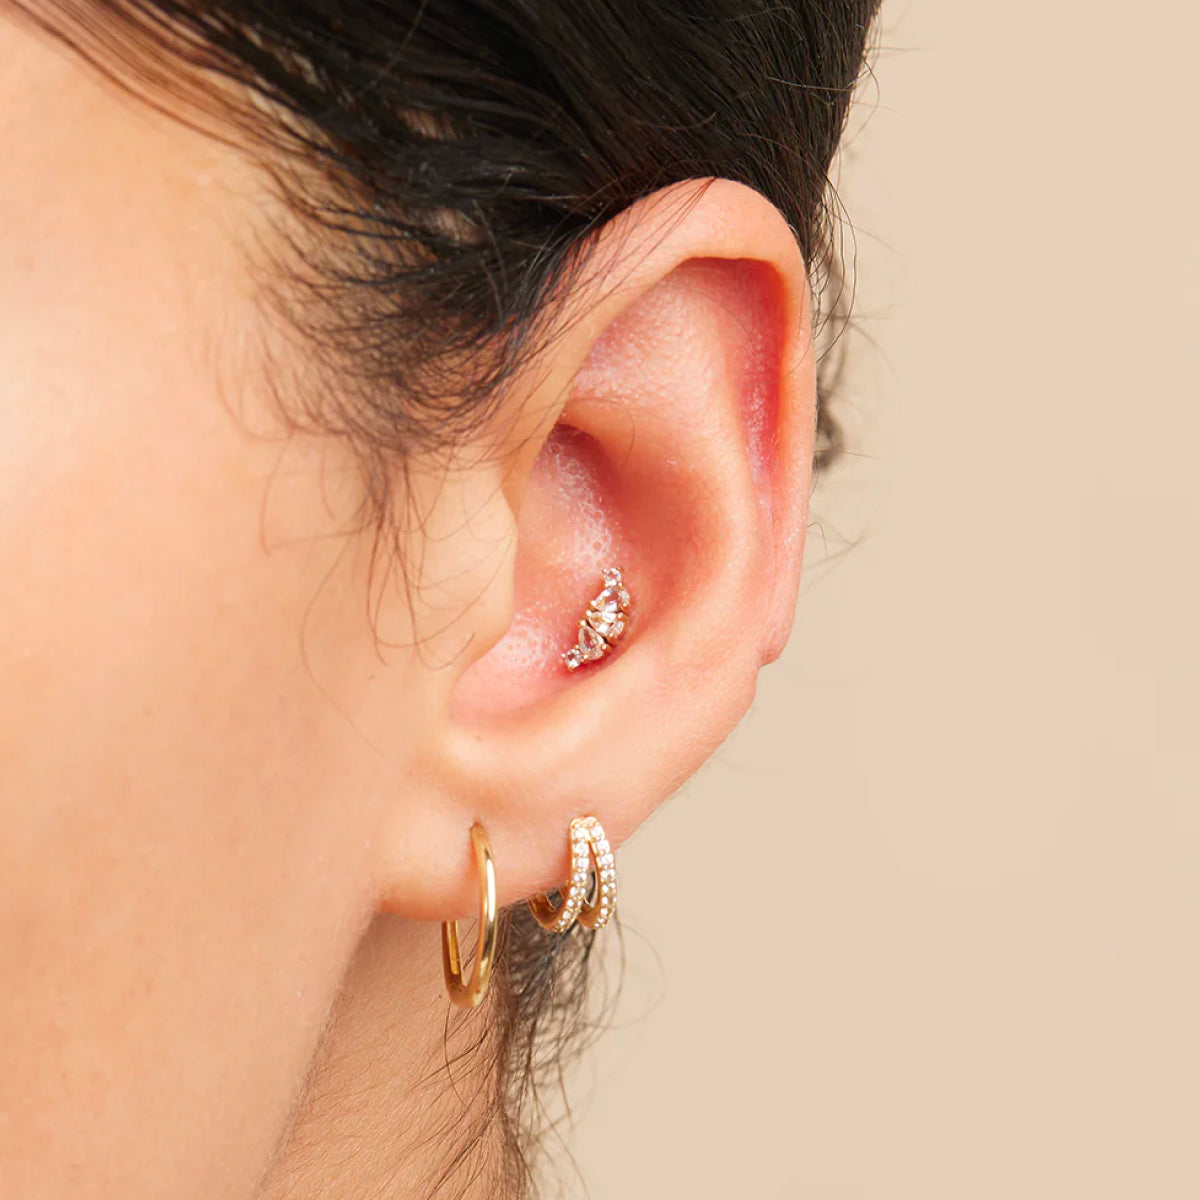 Sun Helix Piercing Hoop, Helix Earring, Cartilage Piercing, Cartilage Hoop  Earing, Gold Helix Hoop Earring, Ear Piercing Gold - Etsy | Helix piercing  jewelry, Helix earrings, Etsy earrings